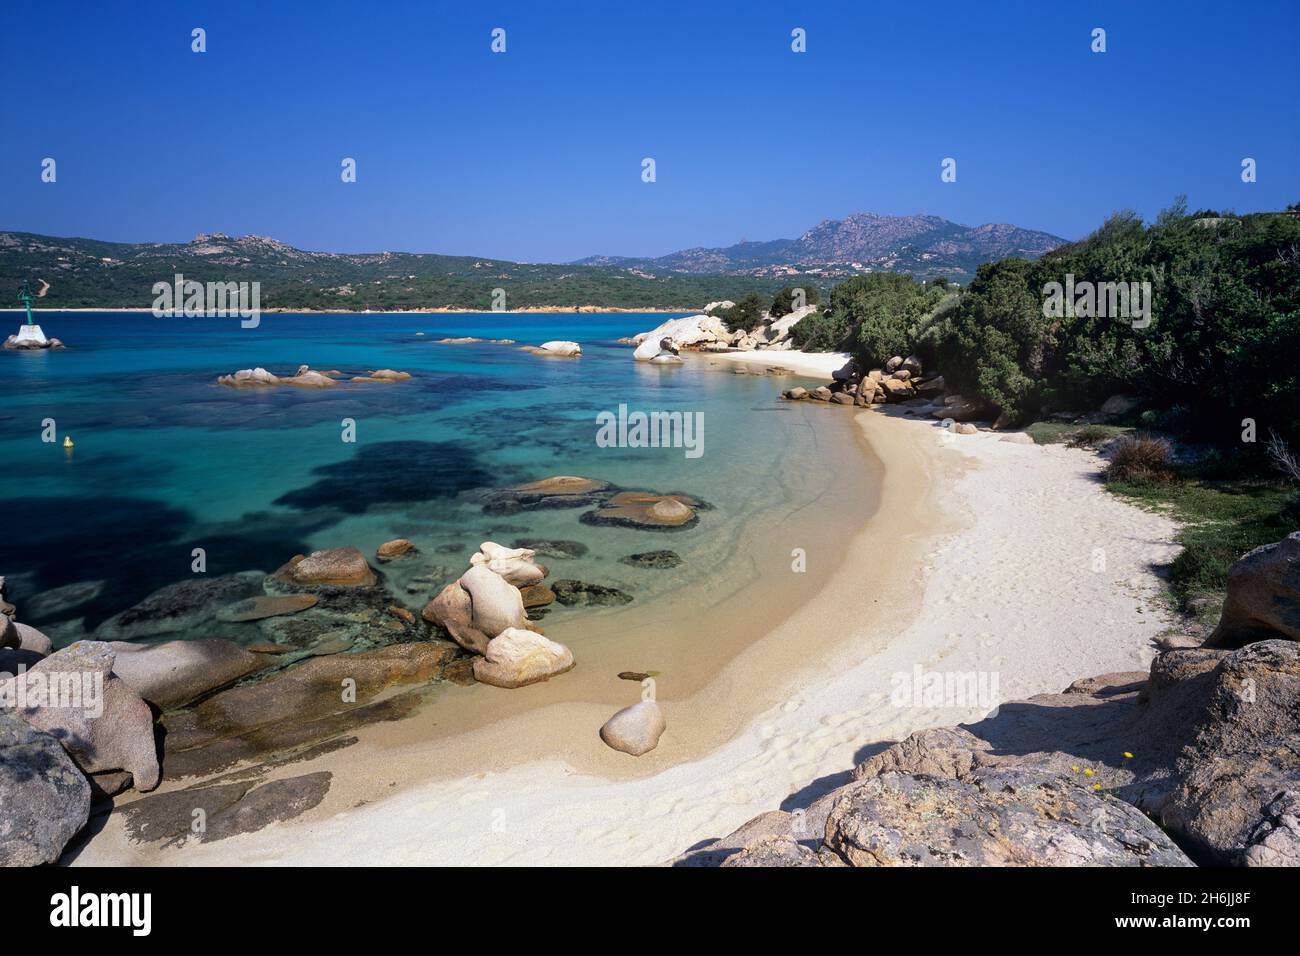 Spiaggia dell Elefante beach, Cala di Volpe, Costa Smeralda, Sardinia, Italy, Mediterranean, Europe Stock Photo